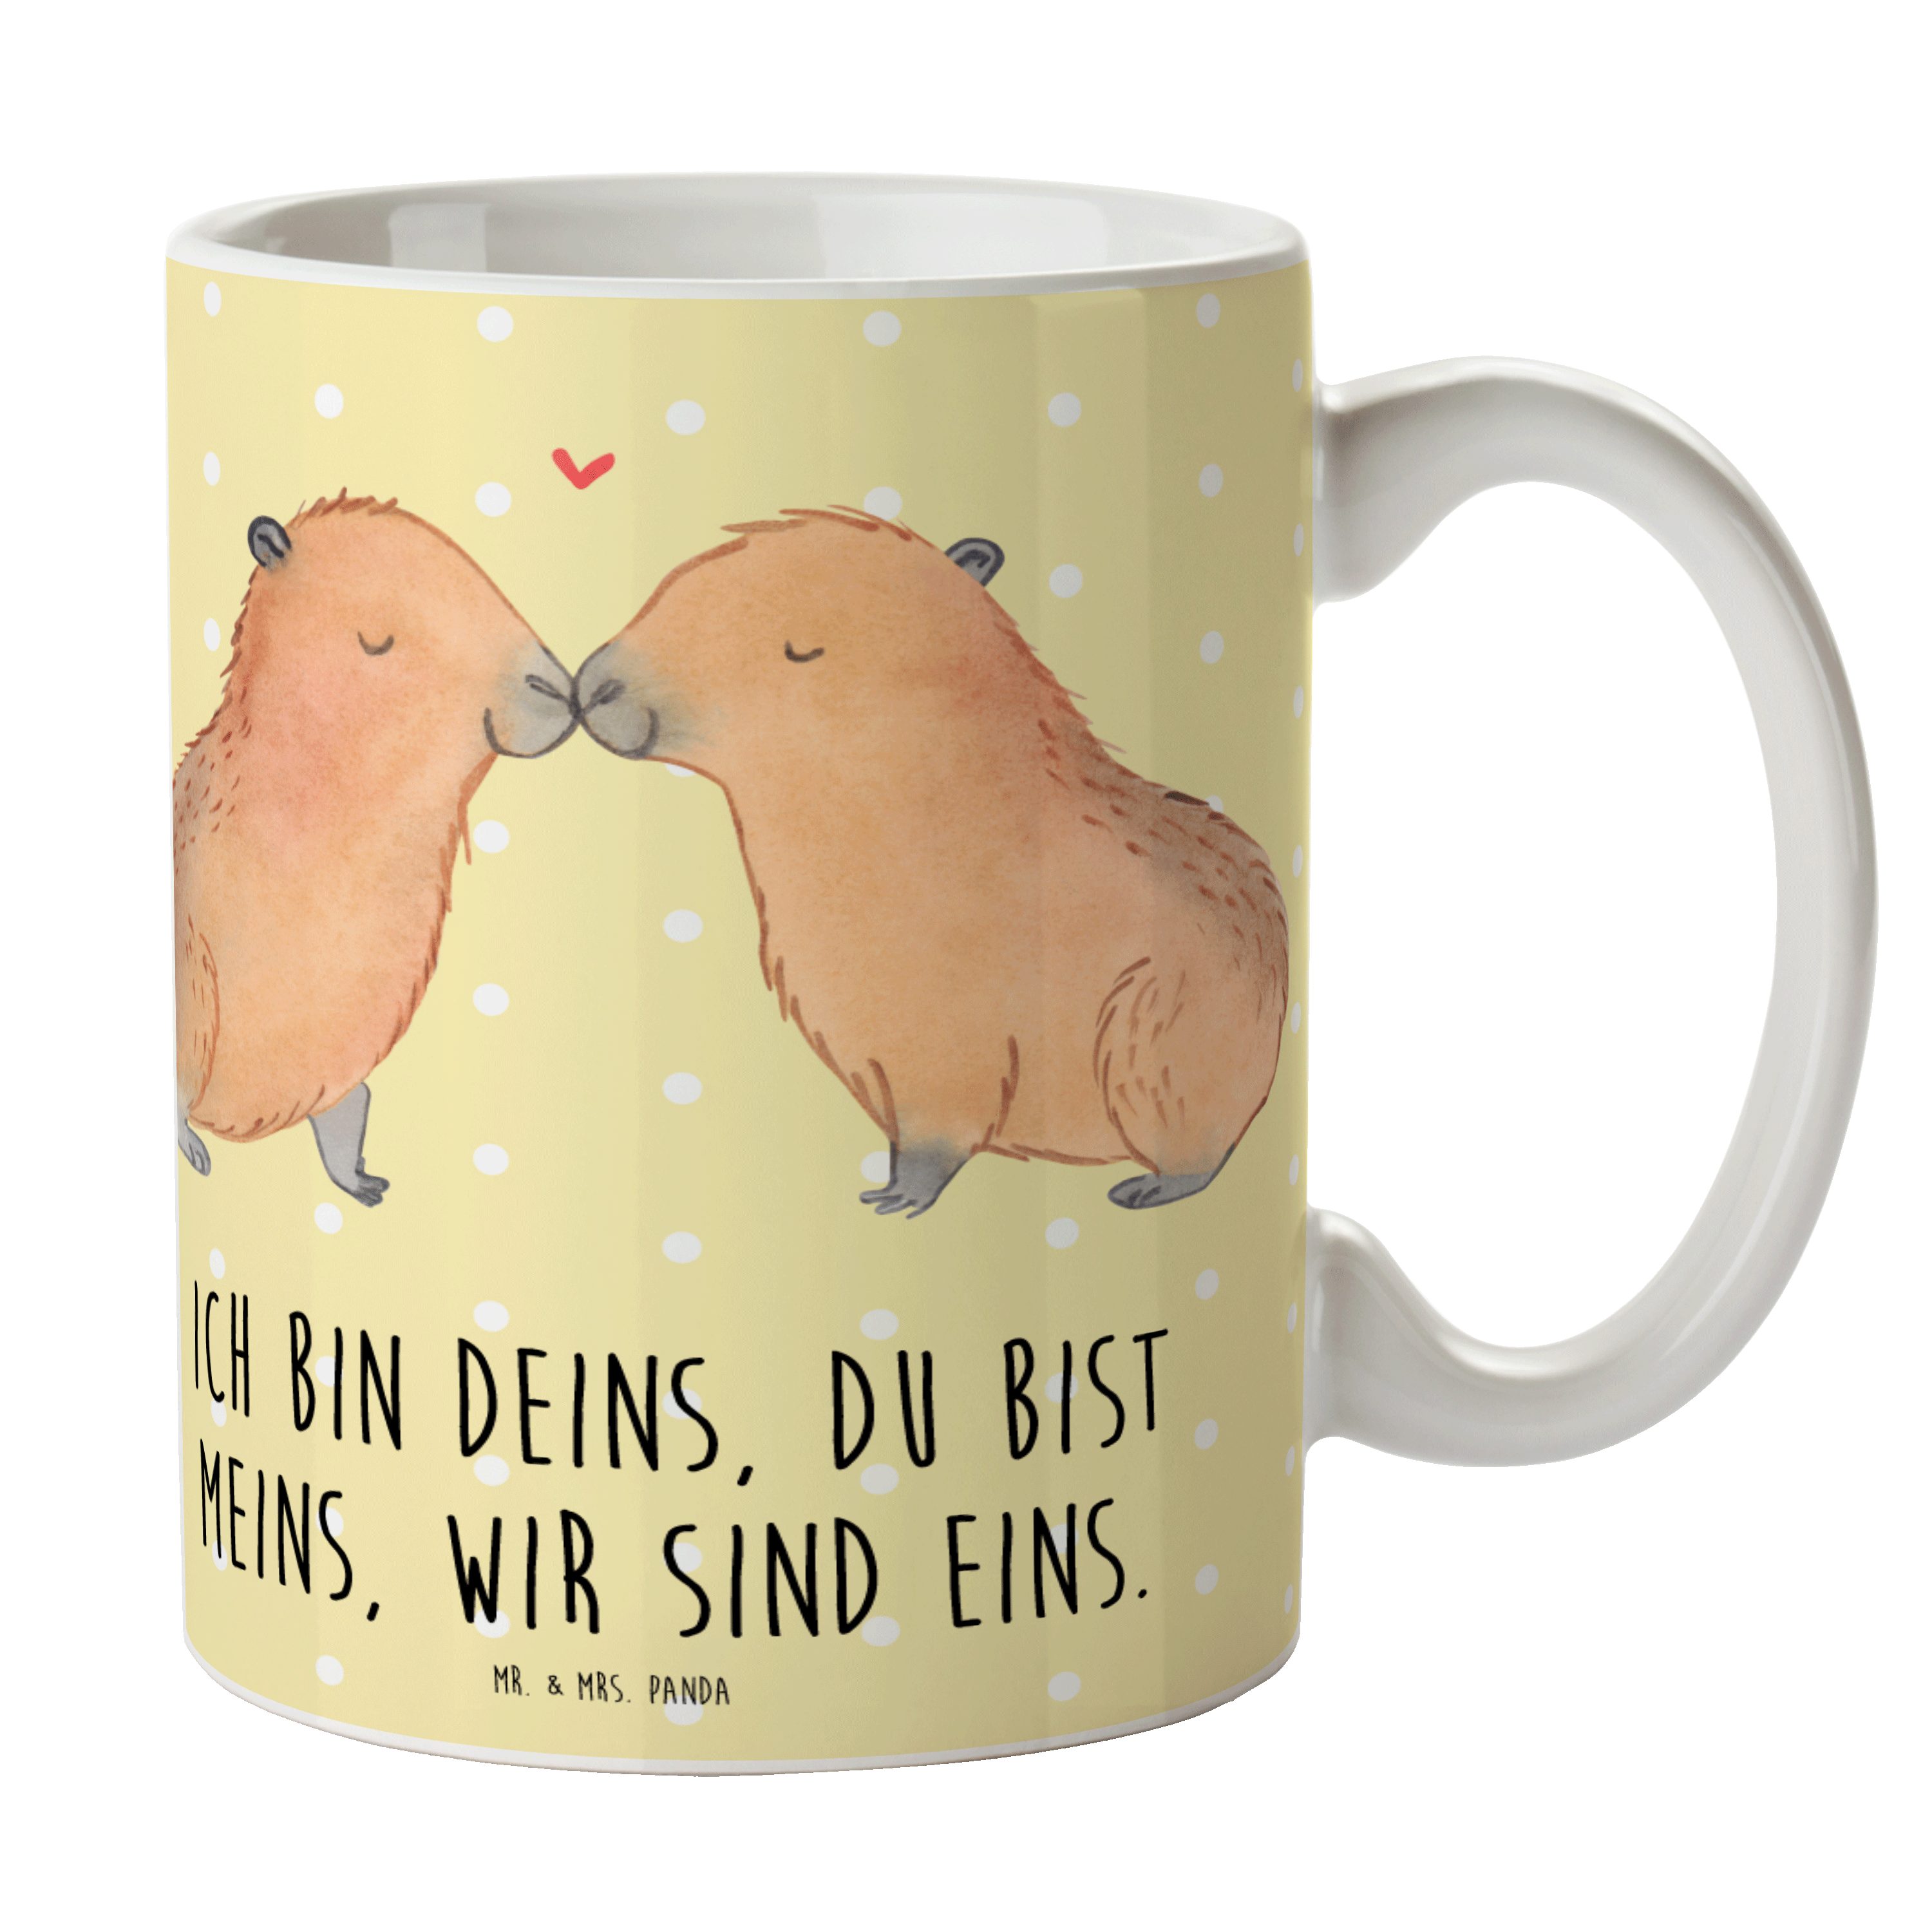 Mr. & Mrs. - Pastell Tasse Gelb Geschenk, Spr, Keramik Handgezeichnet, Capybara - Panda Liebe lustige